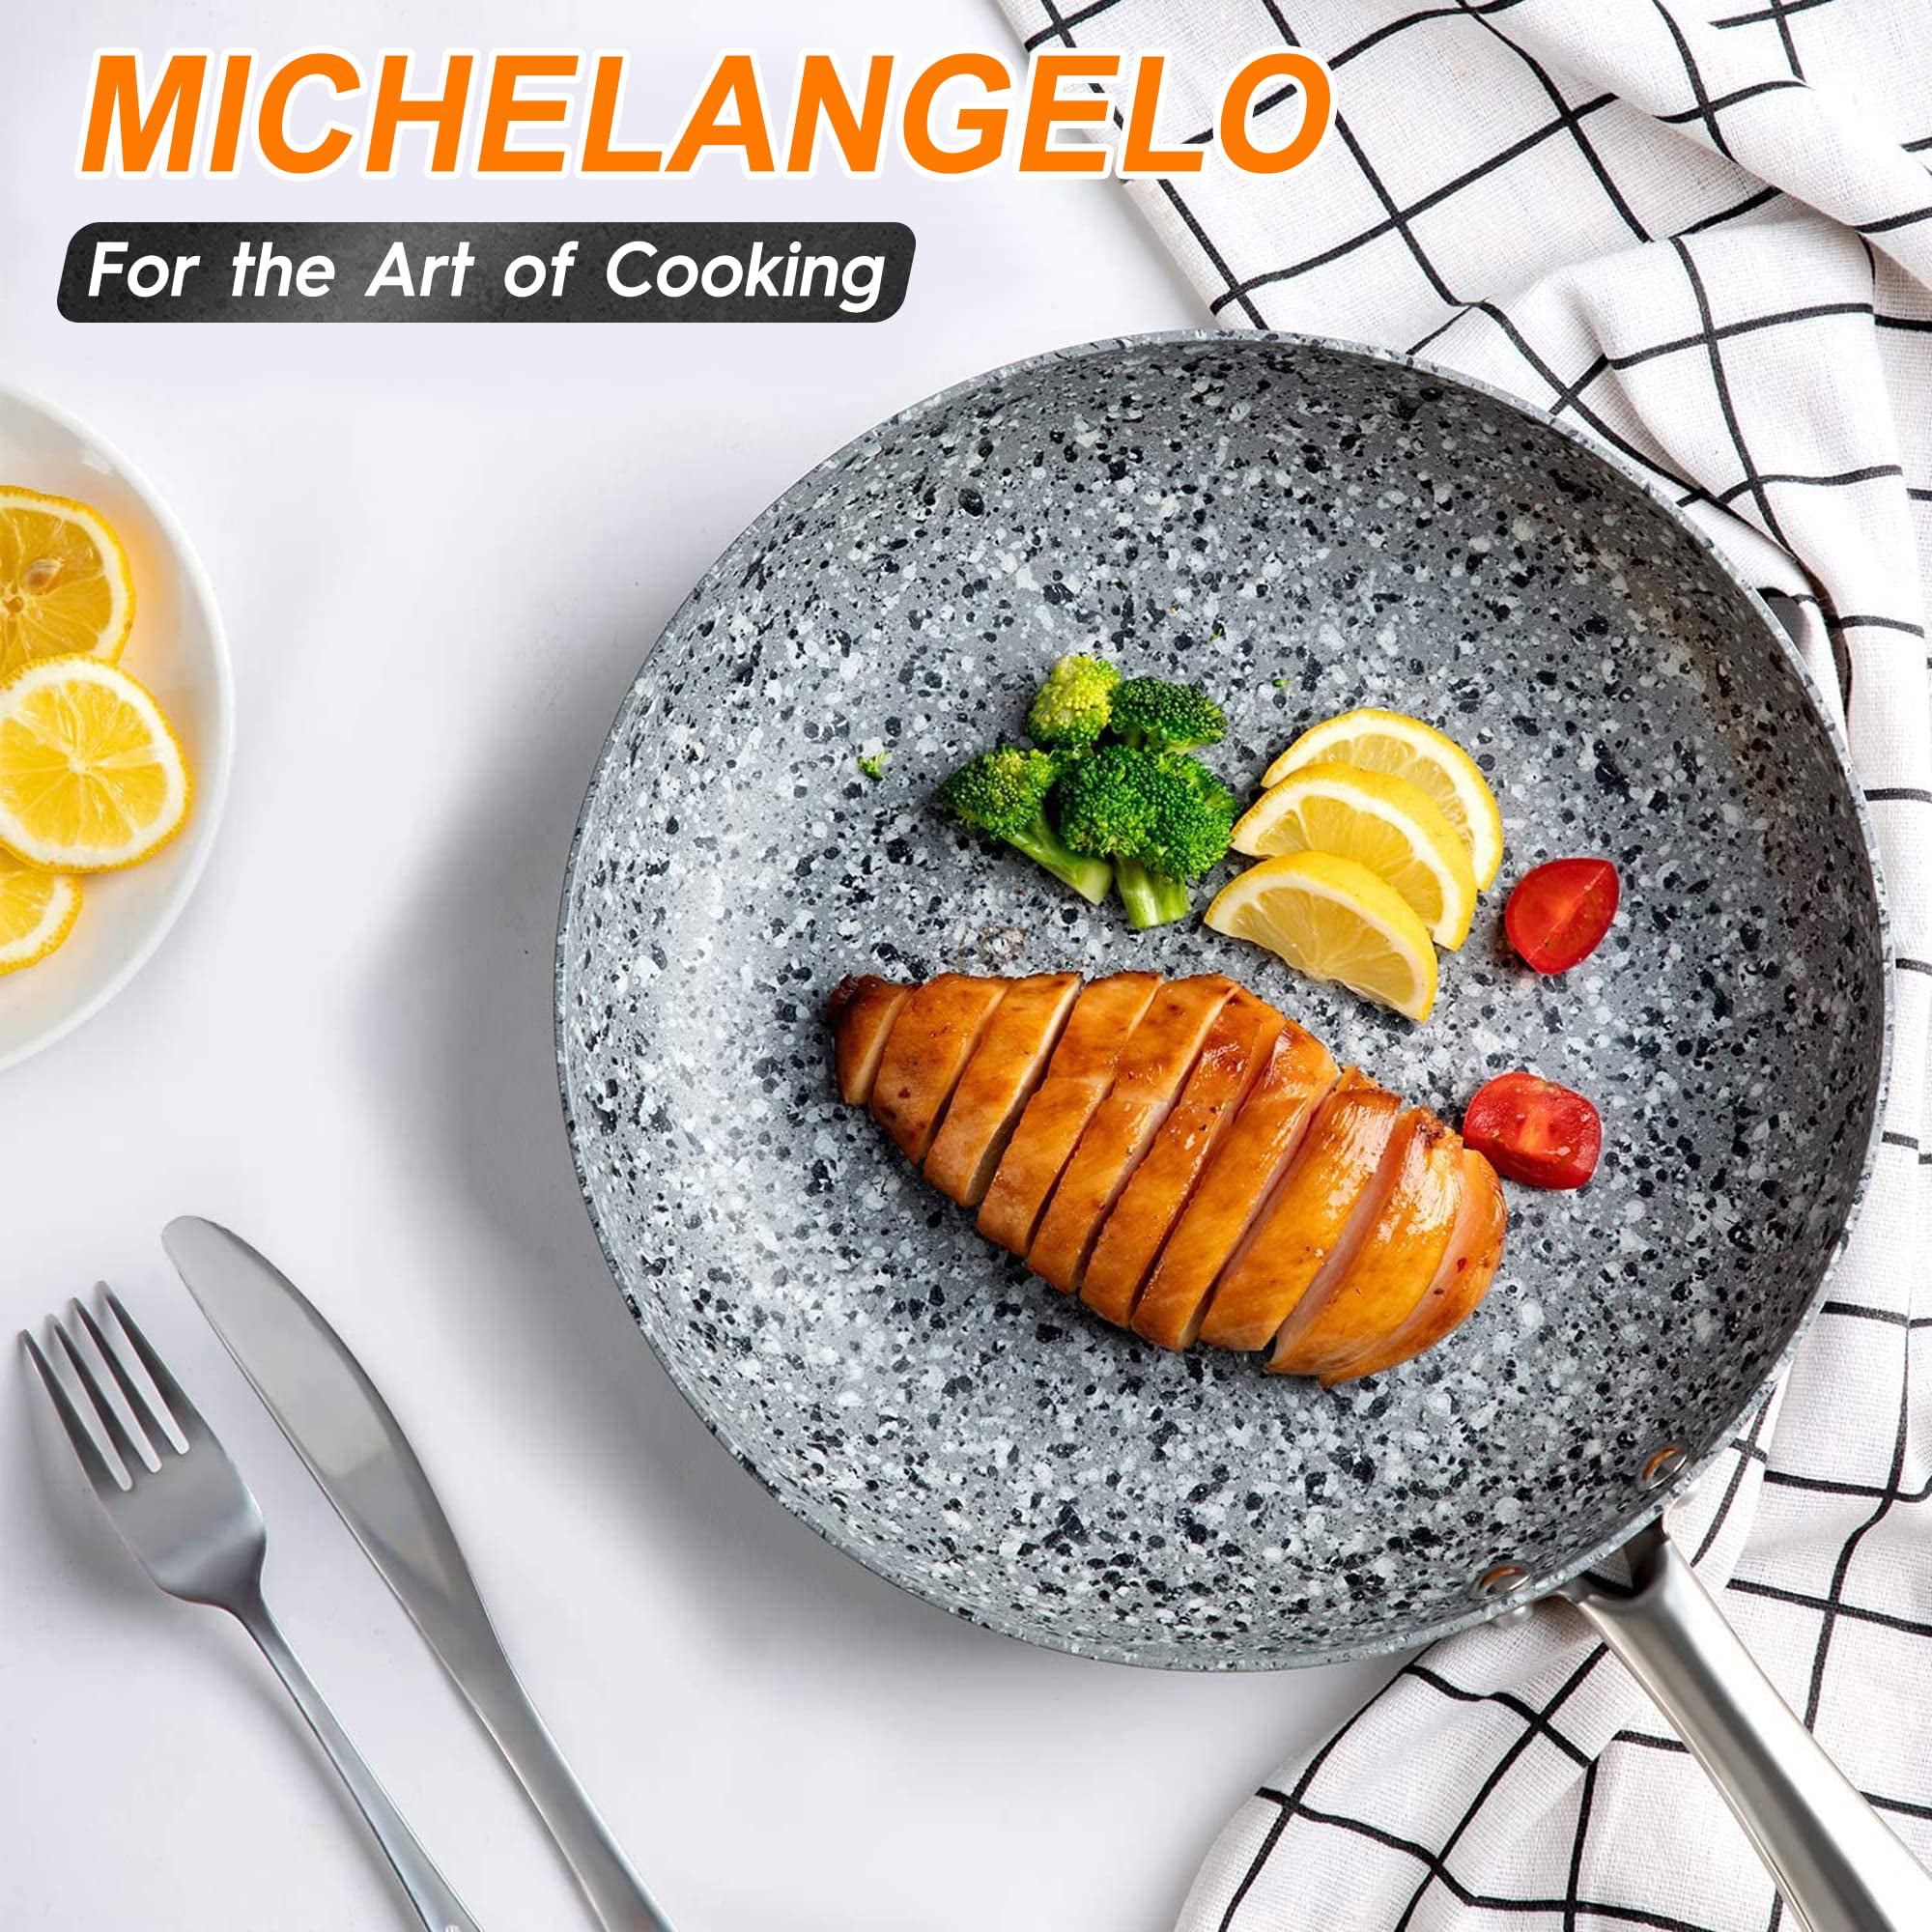 Michelangelo michelangelo frying pan set, 8+9.5+11 stone frying